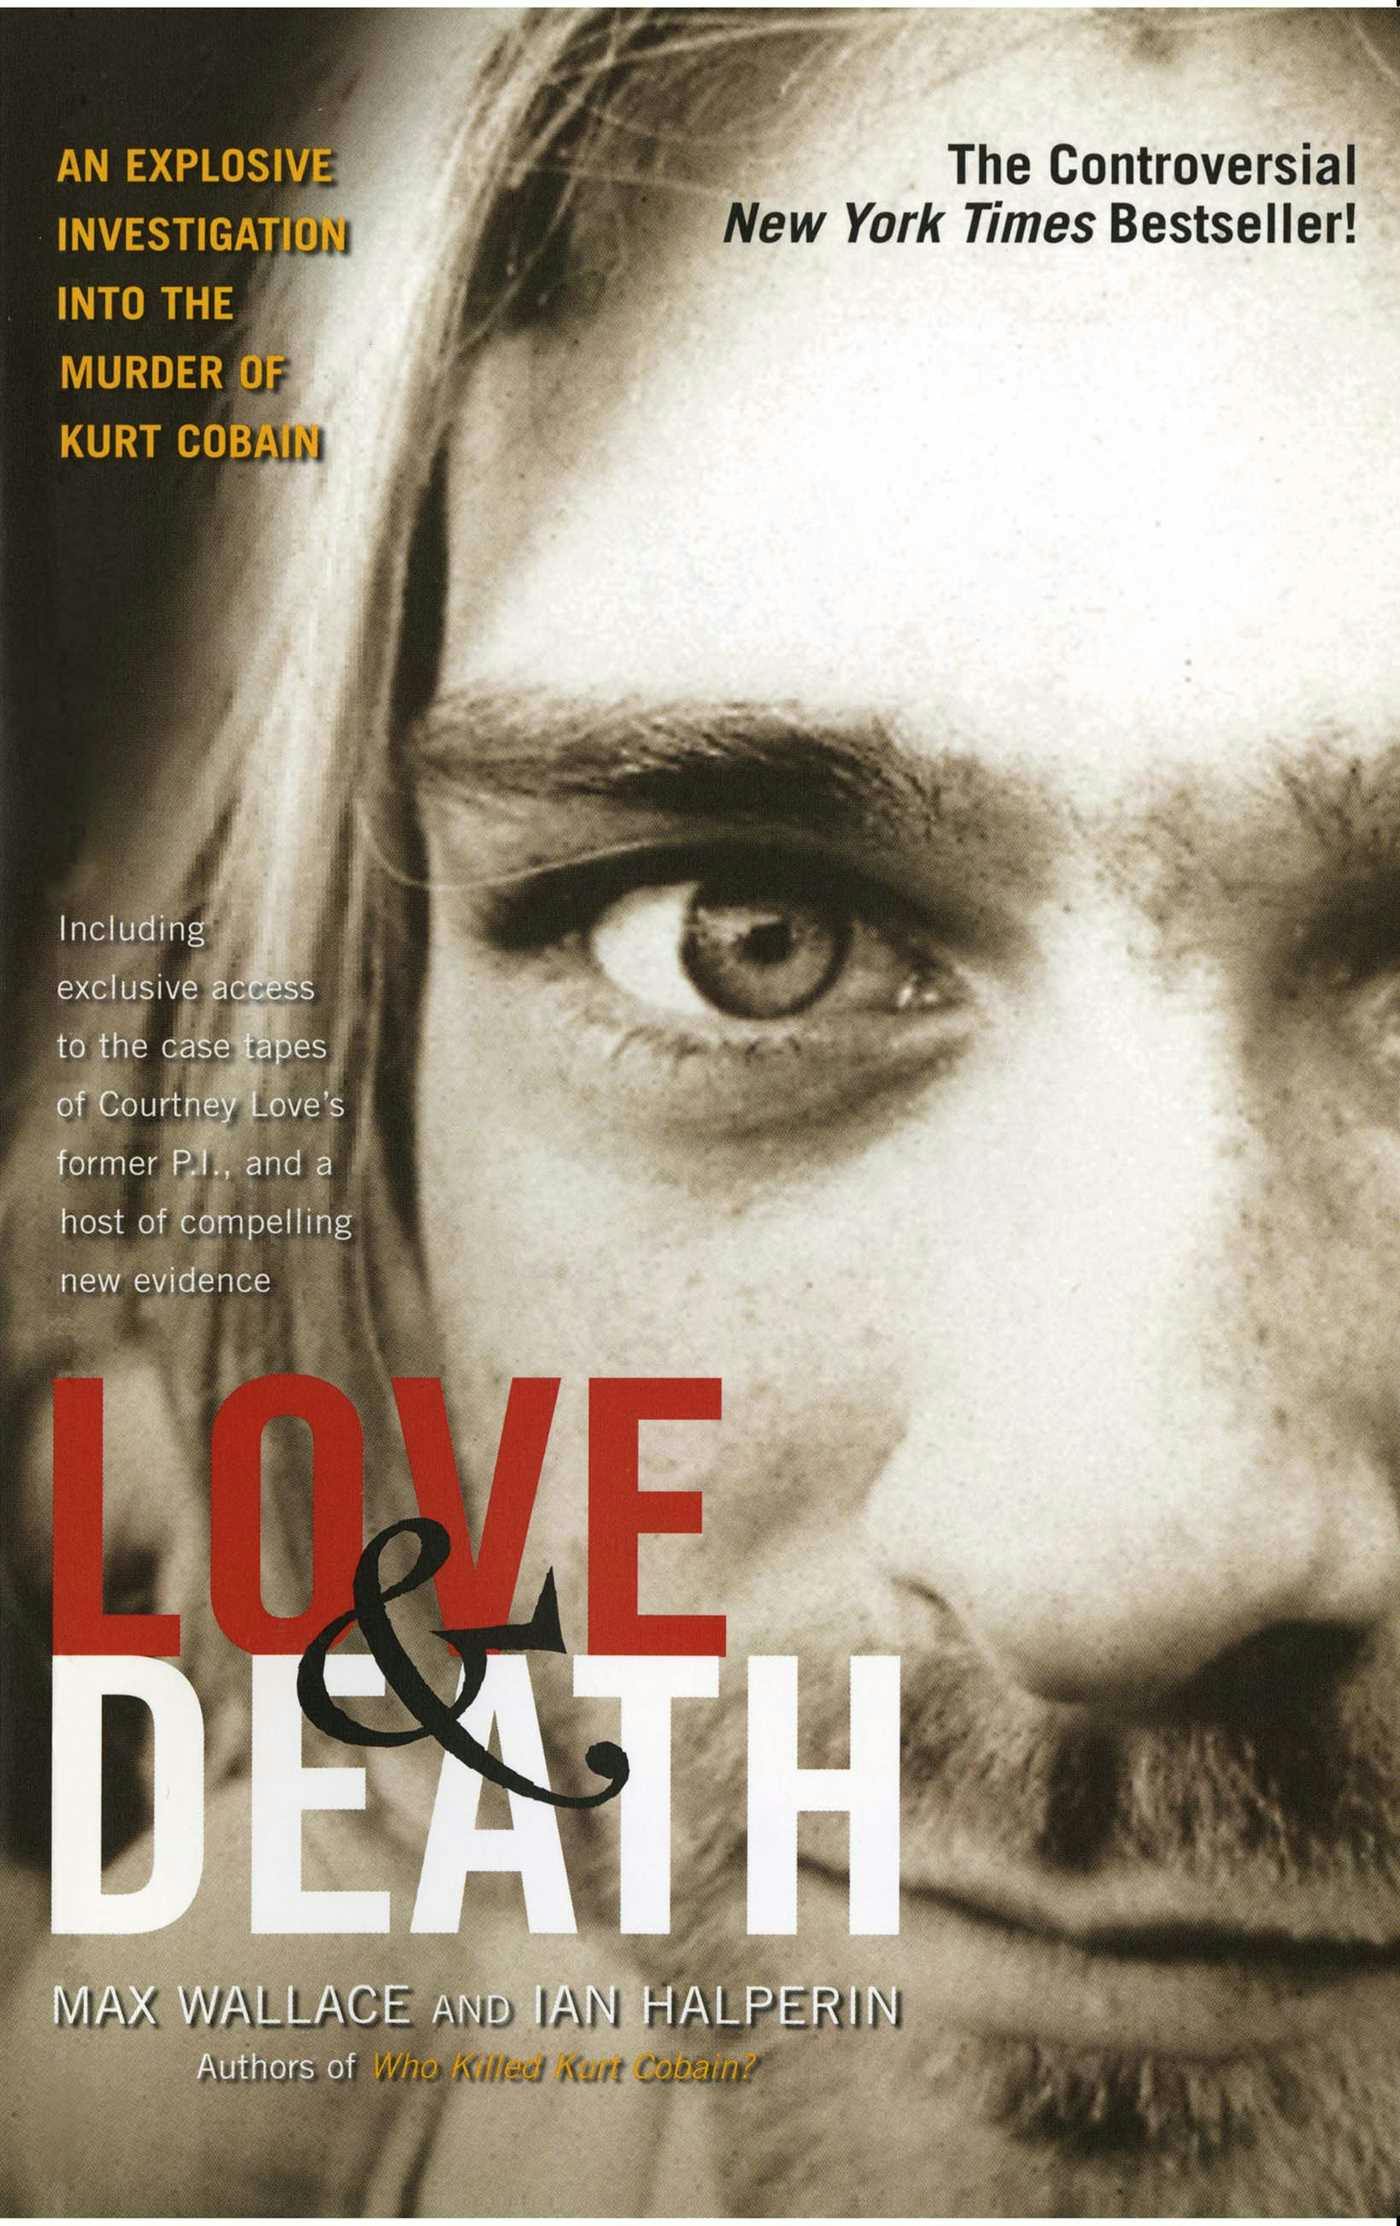 Love & Death: The Murder of Kurt Cobain - Max Wallace, Ian Halperin